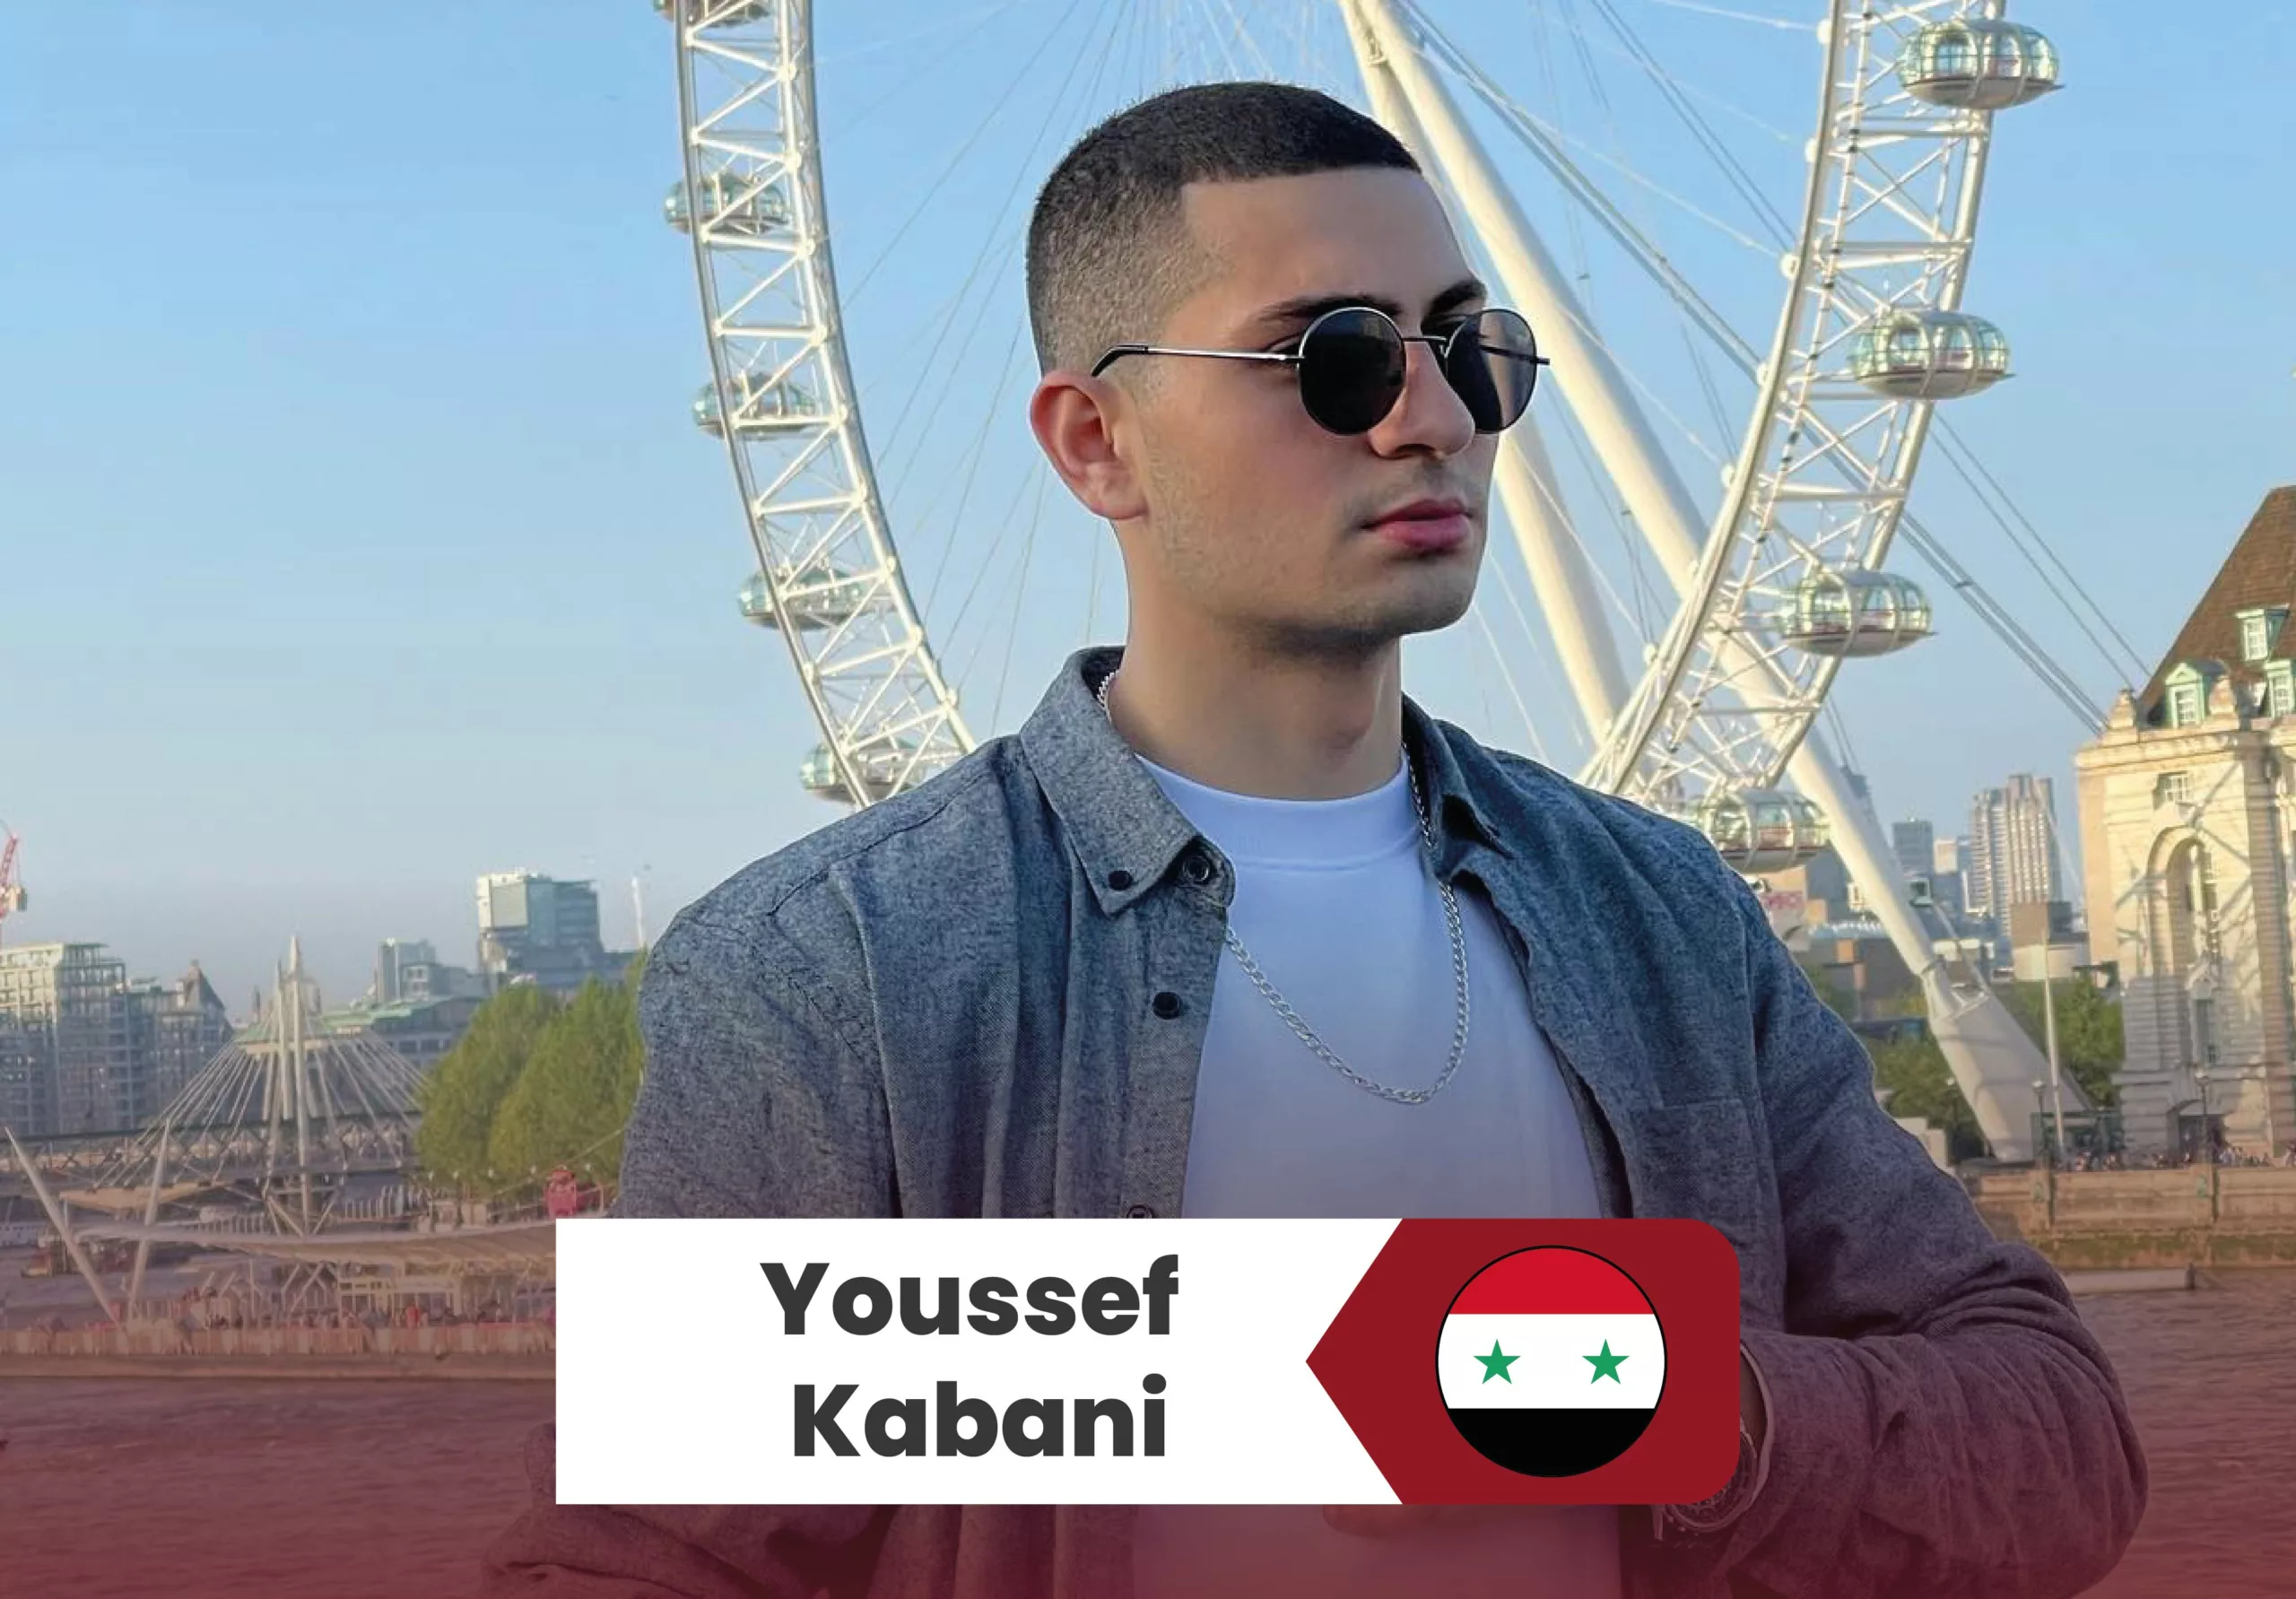 youssef kabani scaled